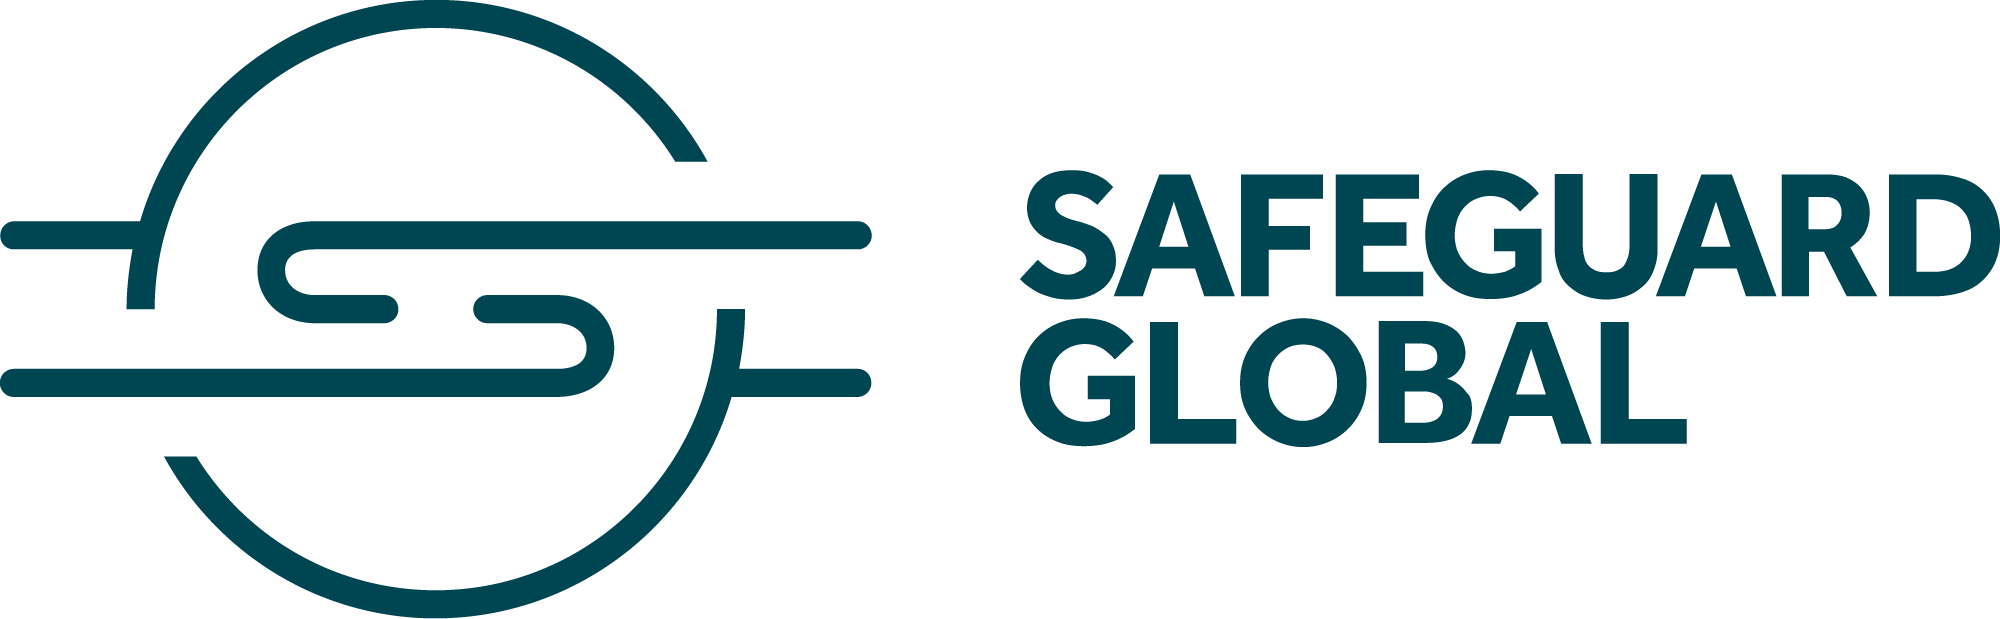 safeguard-global-logo.png